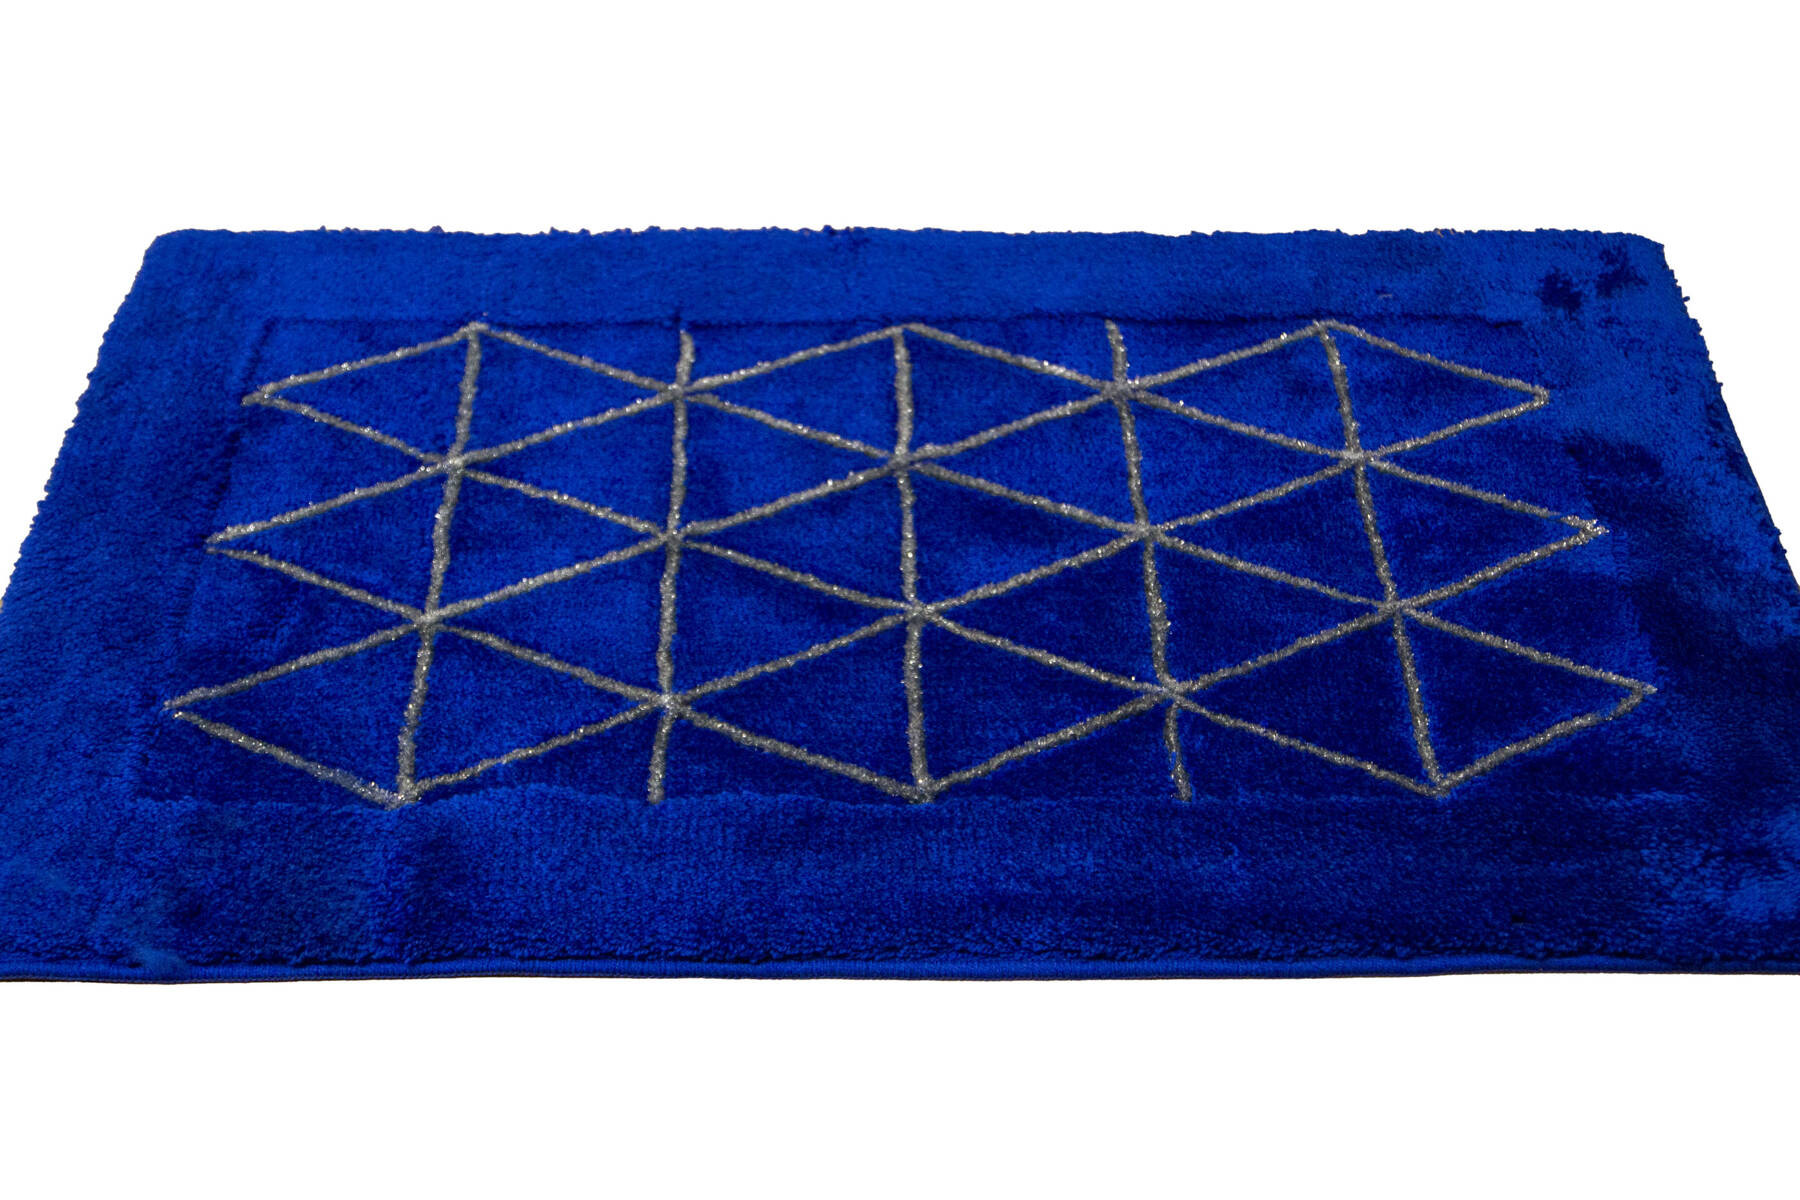 Koupelnový kobereček Jarpol Agadir Lurex 30 modrý / stříbrný